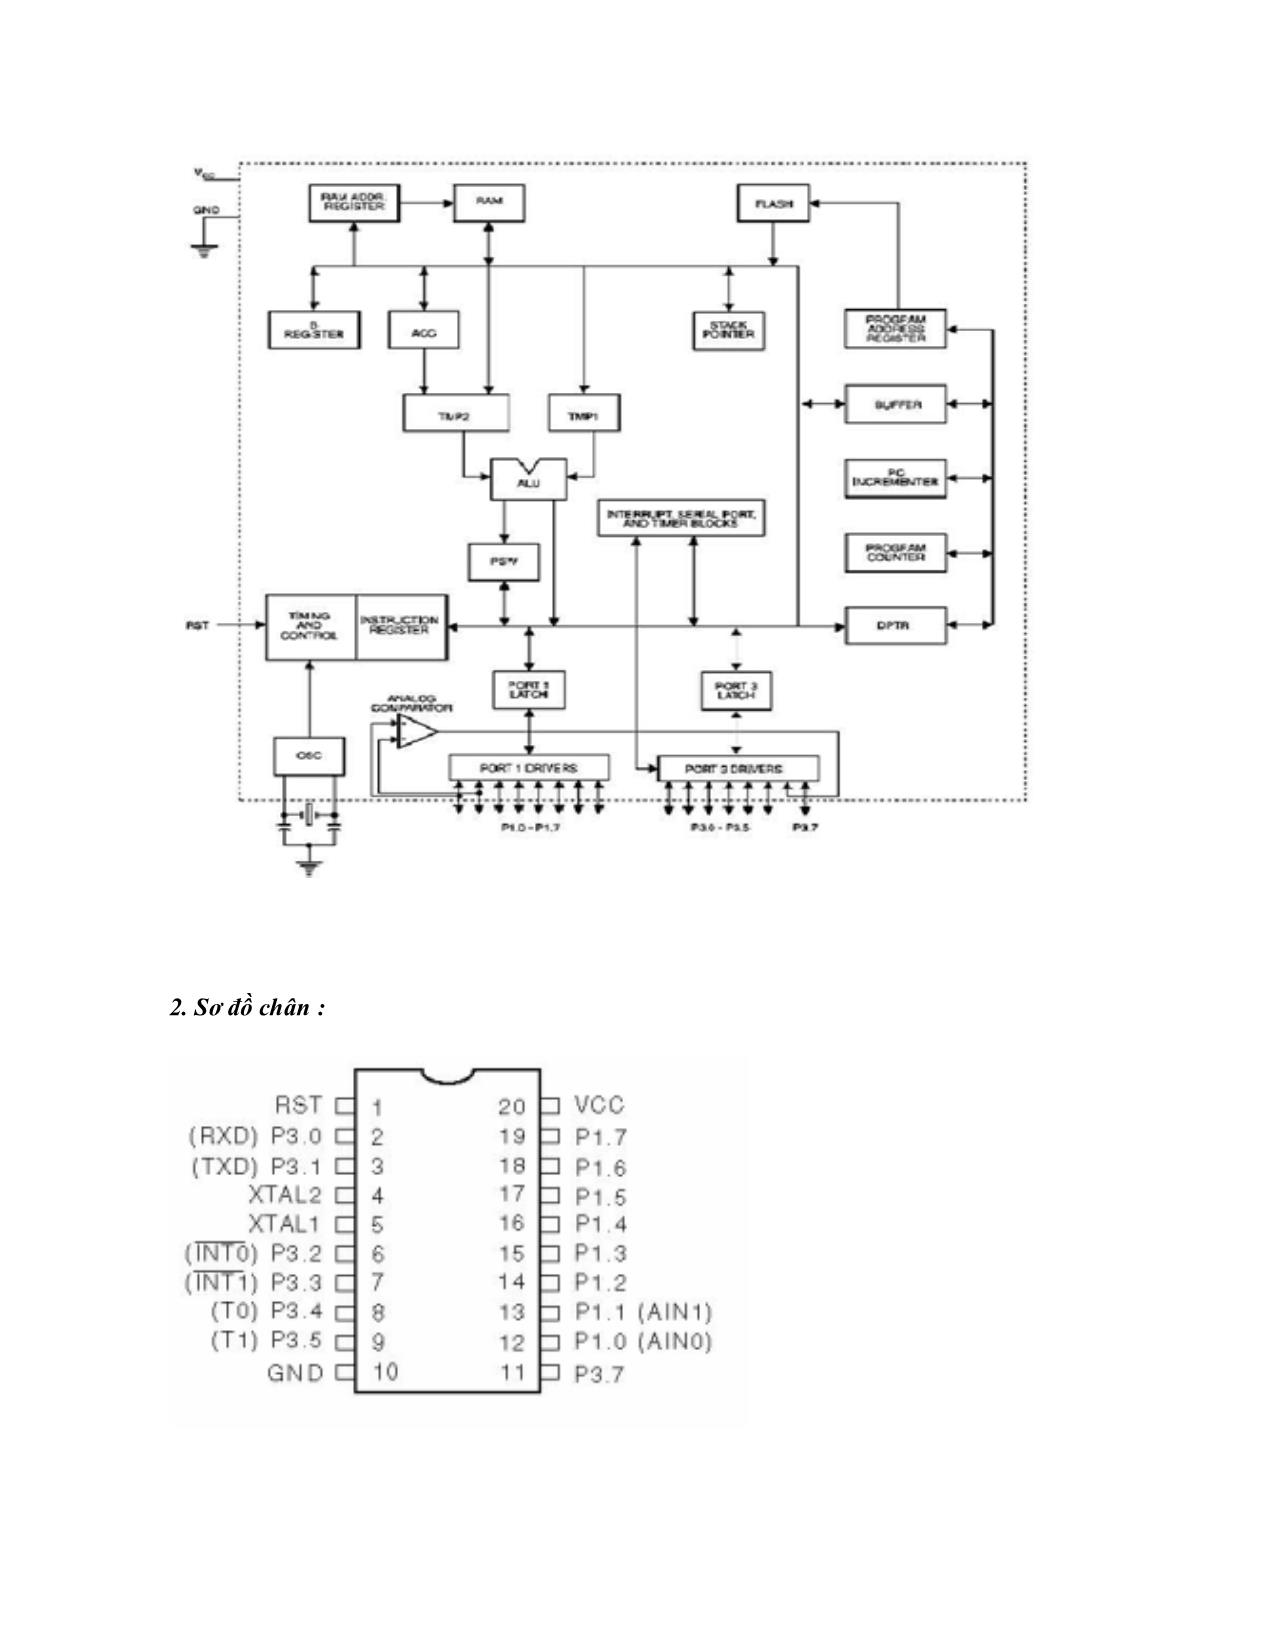 Tìm hiểu IC 89C2051 và mạch nạp chương trình cho IC 89C2051 trang 2